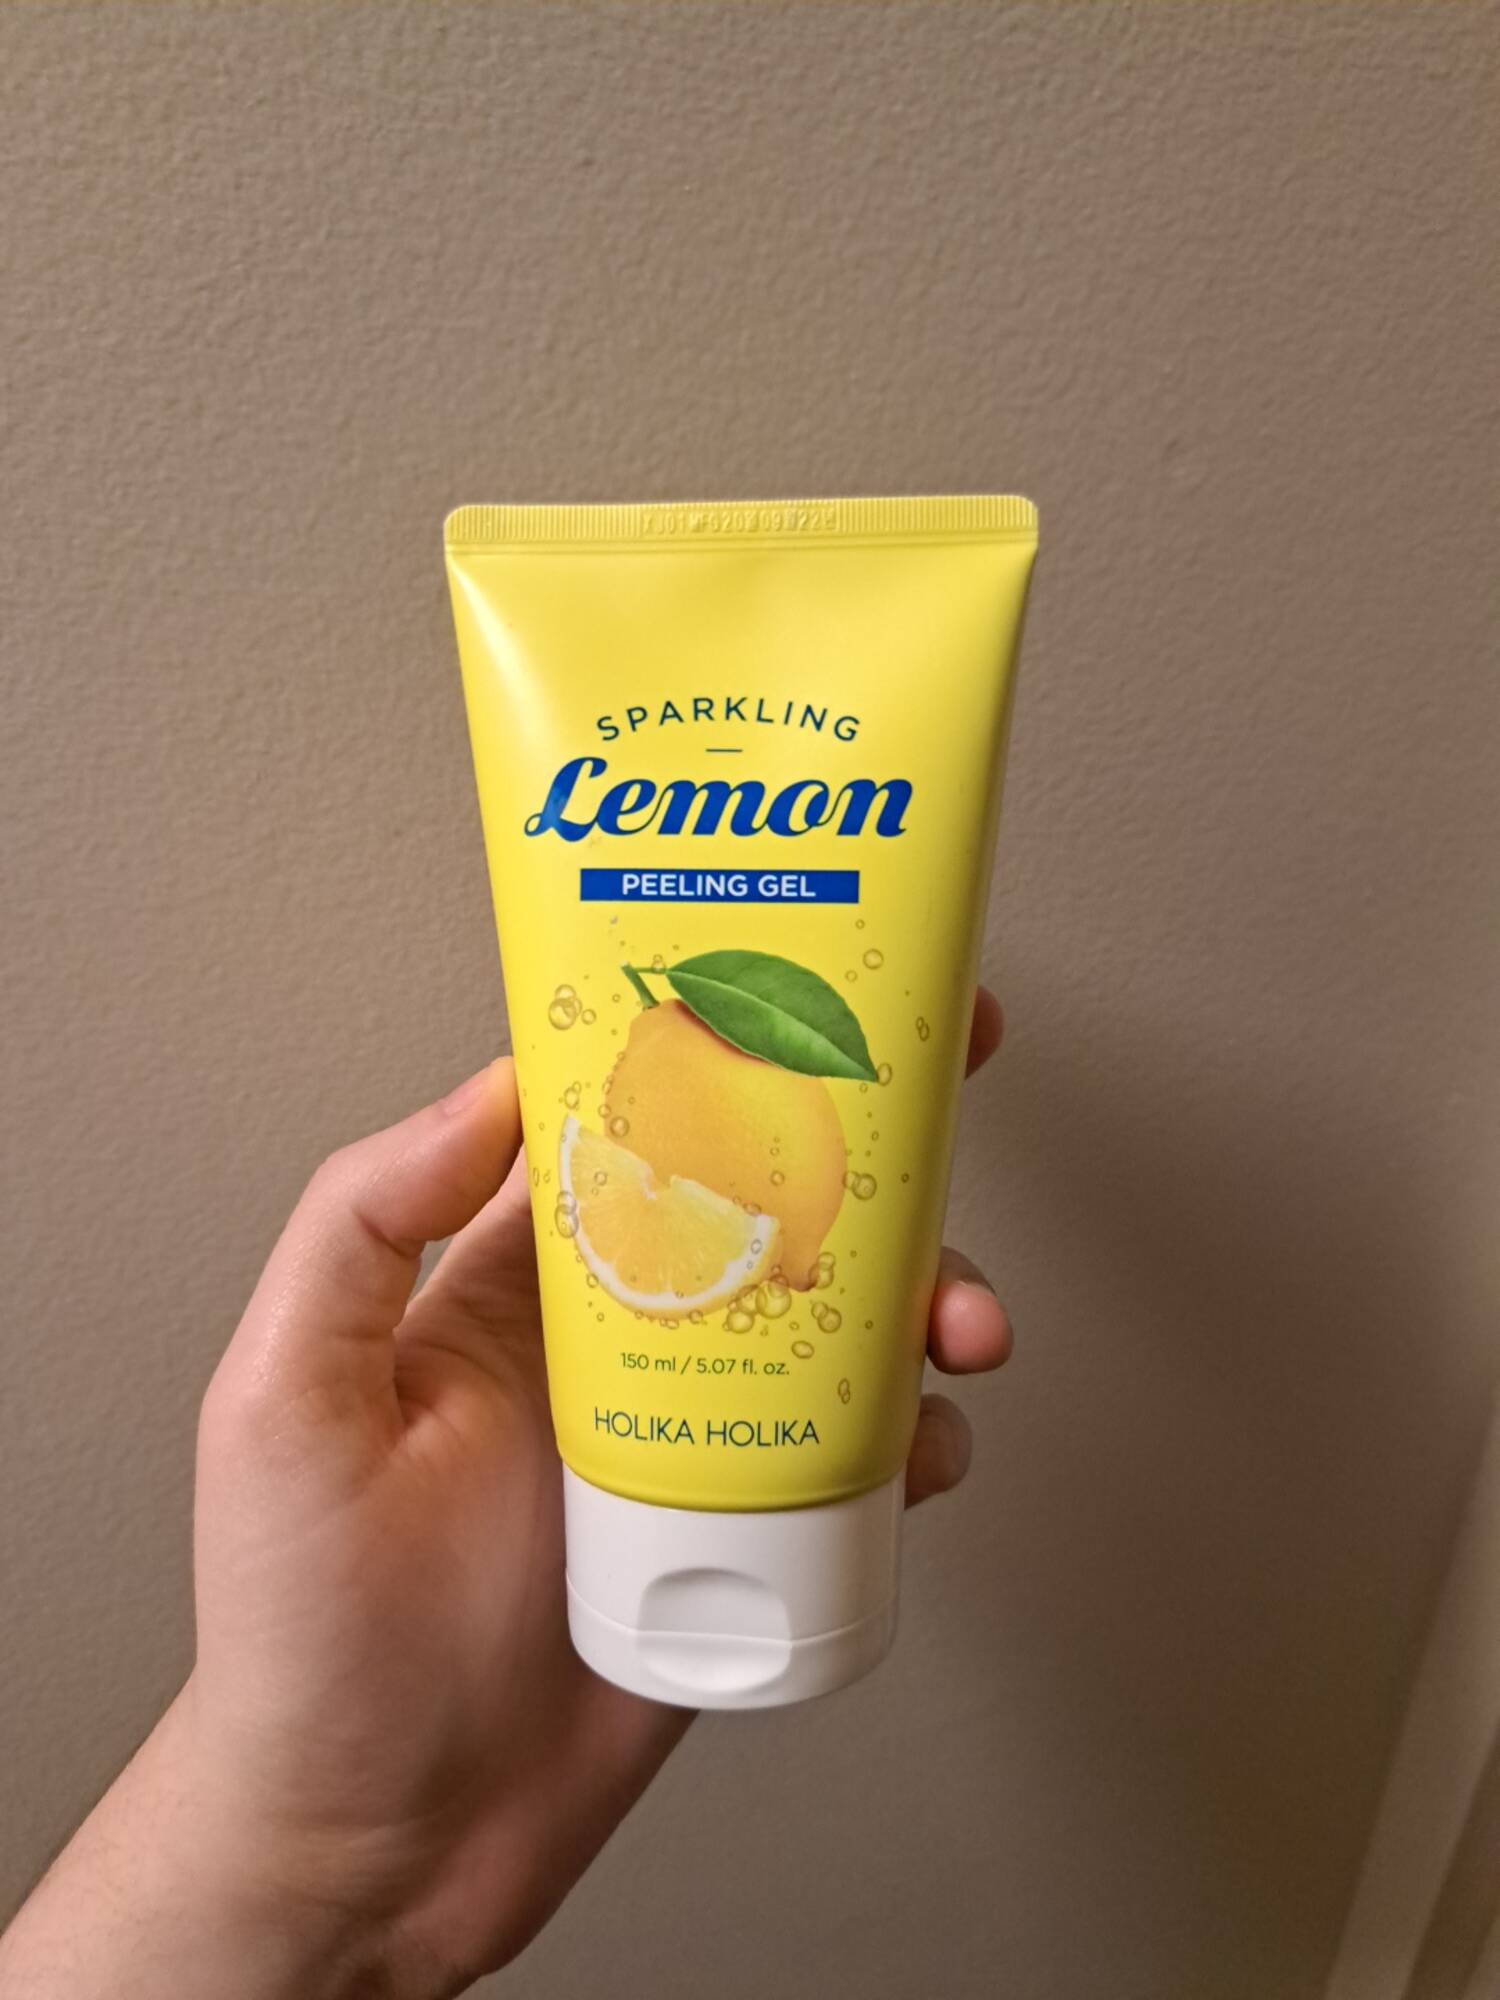 HOLIKA HOLIKA - Sparkling lemon - Peeling gel